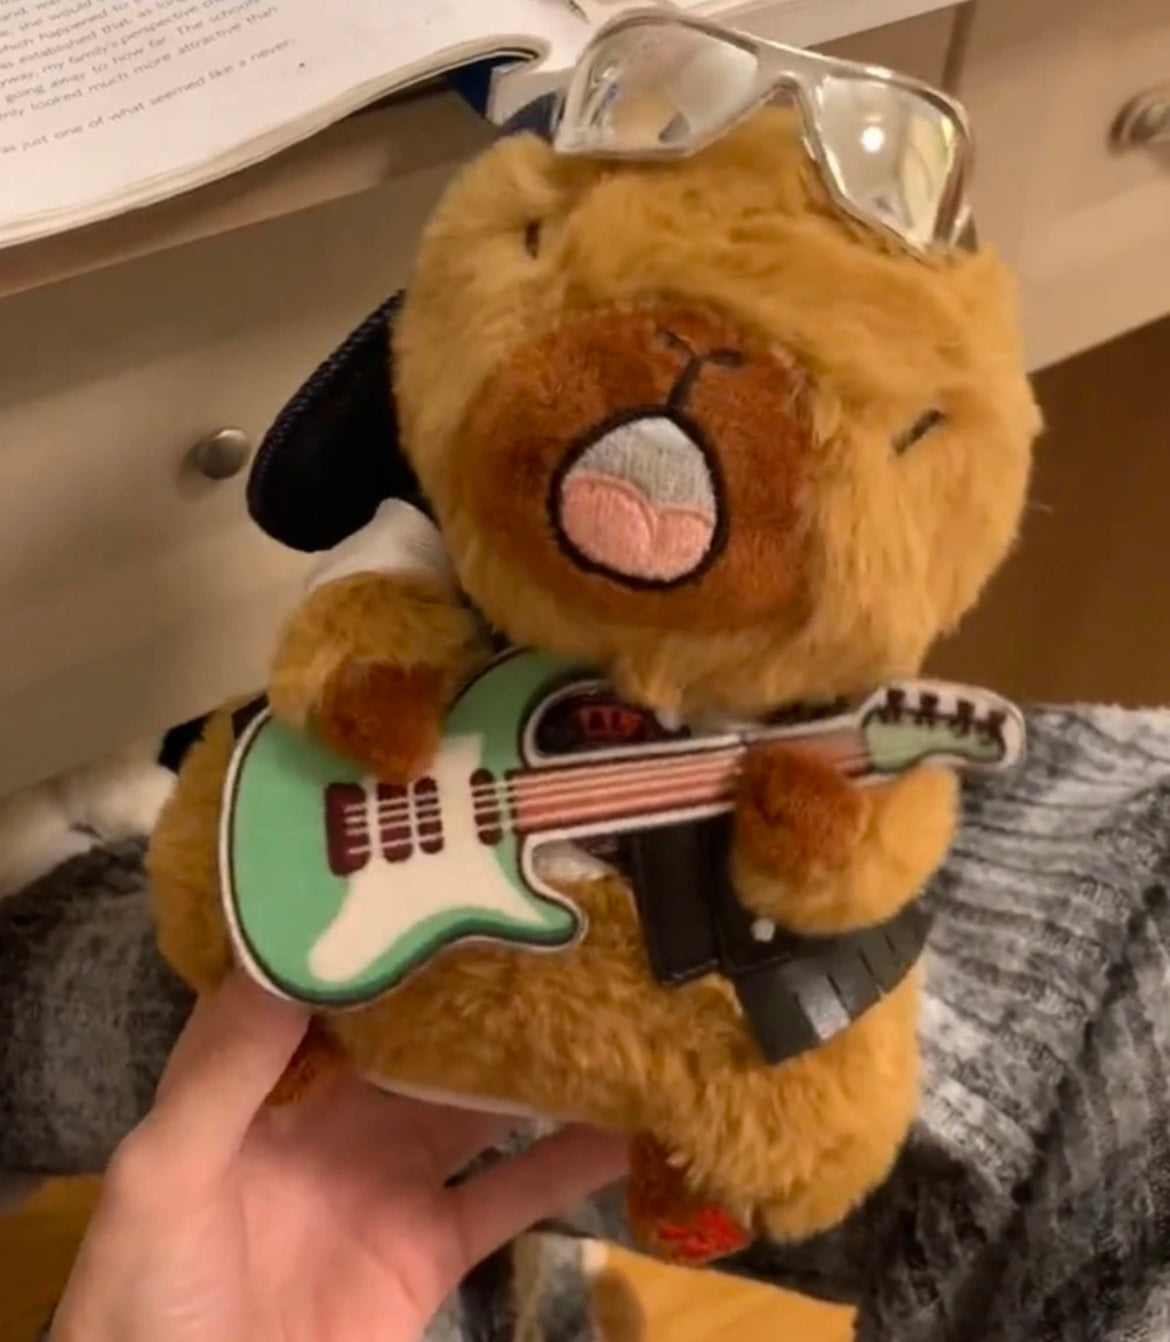 OFERTA Capybara toca la guitarra